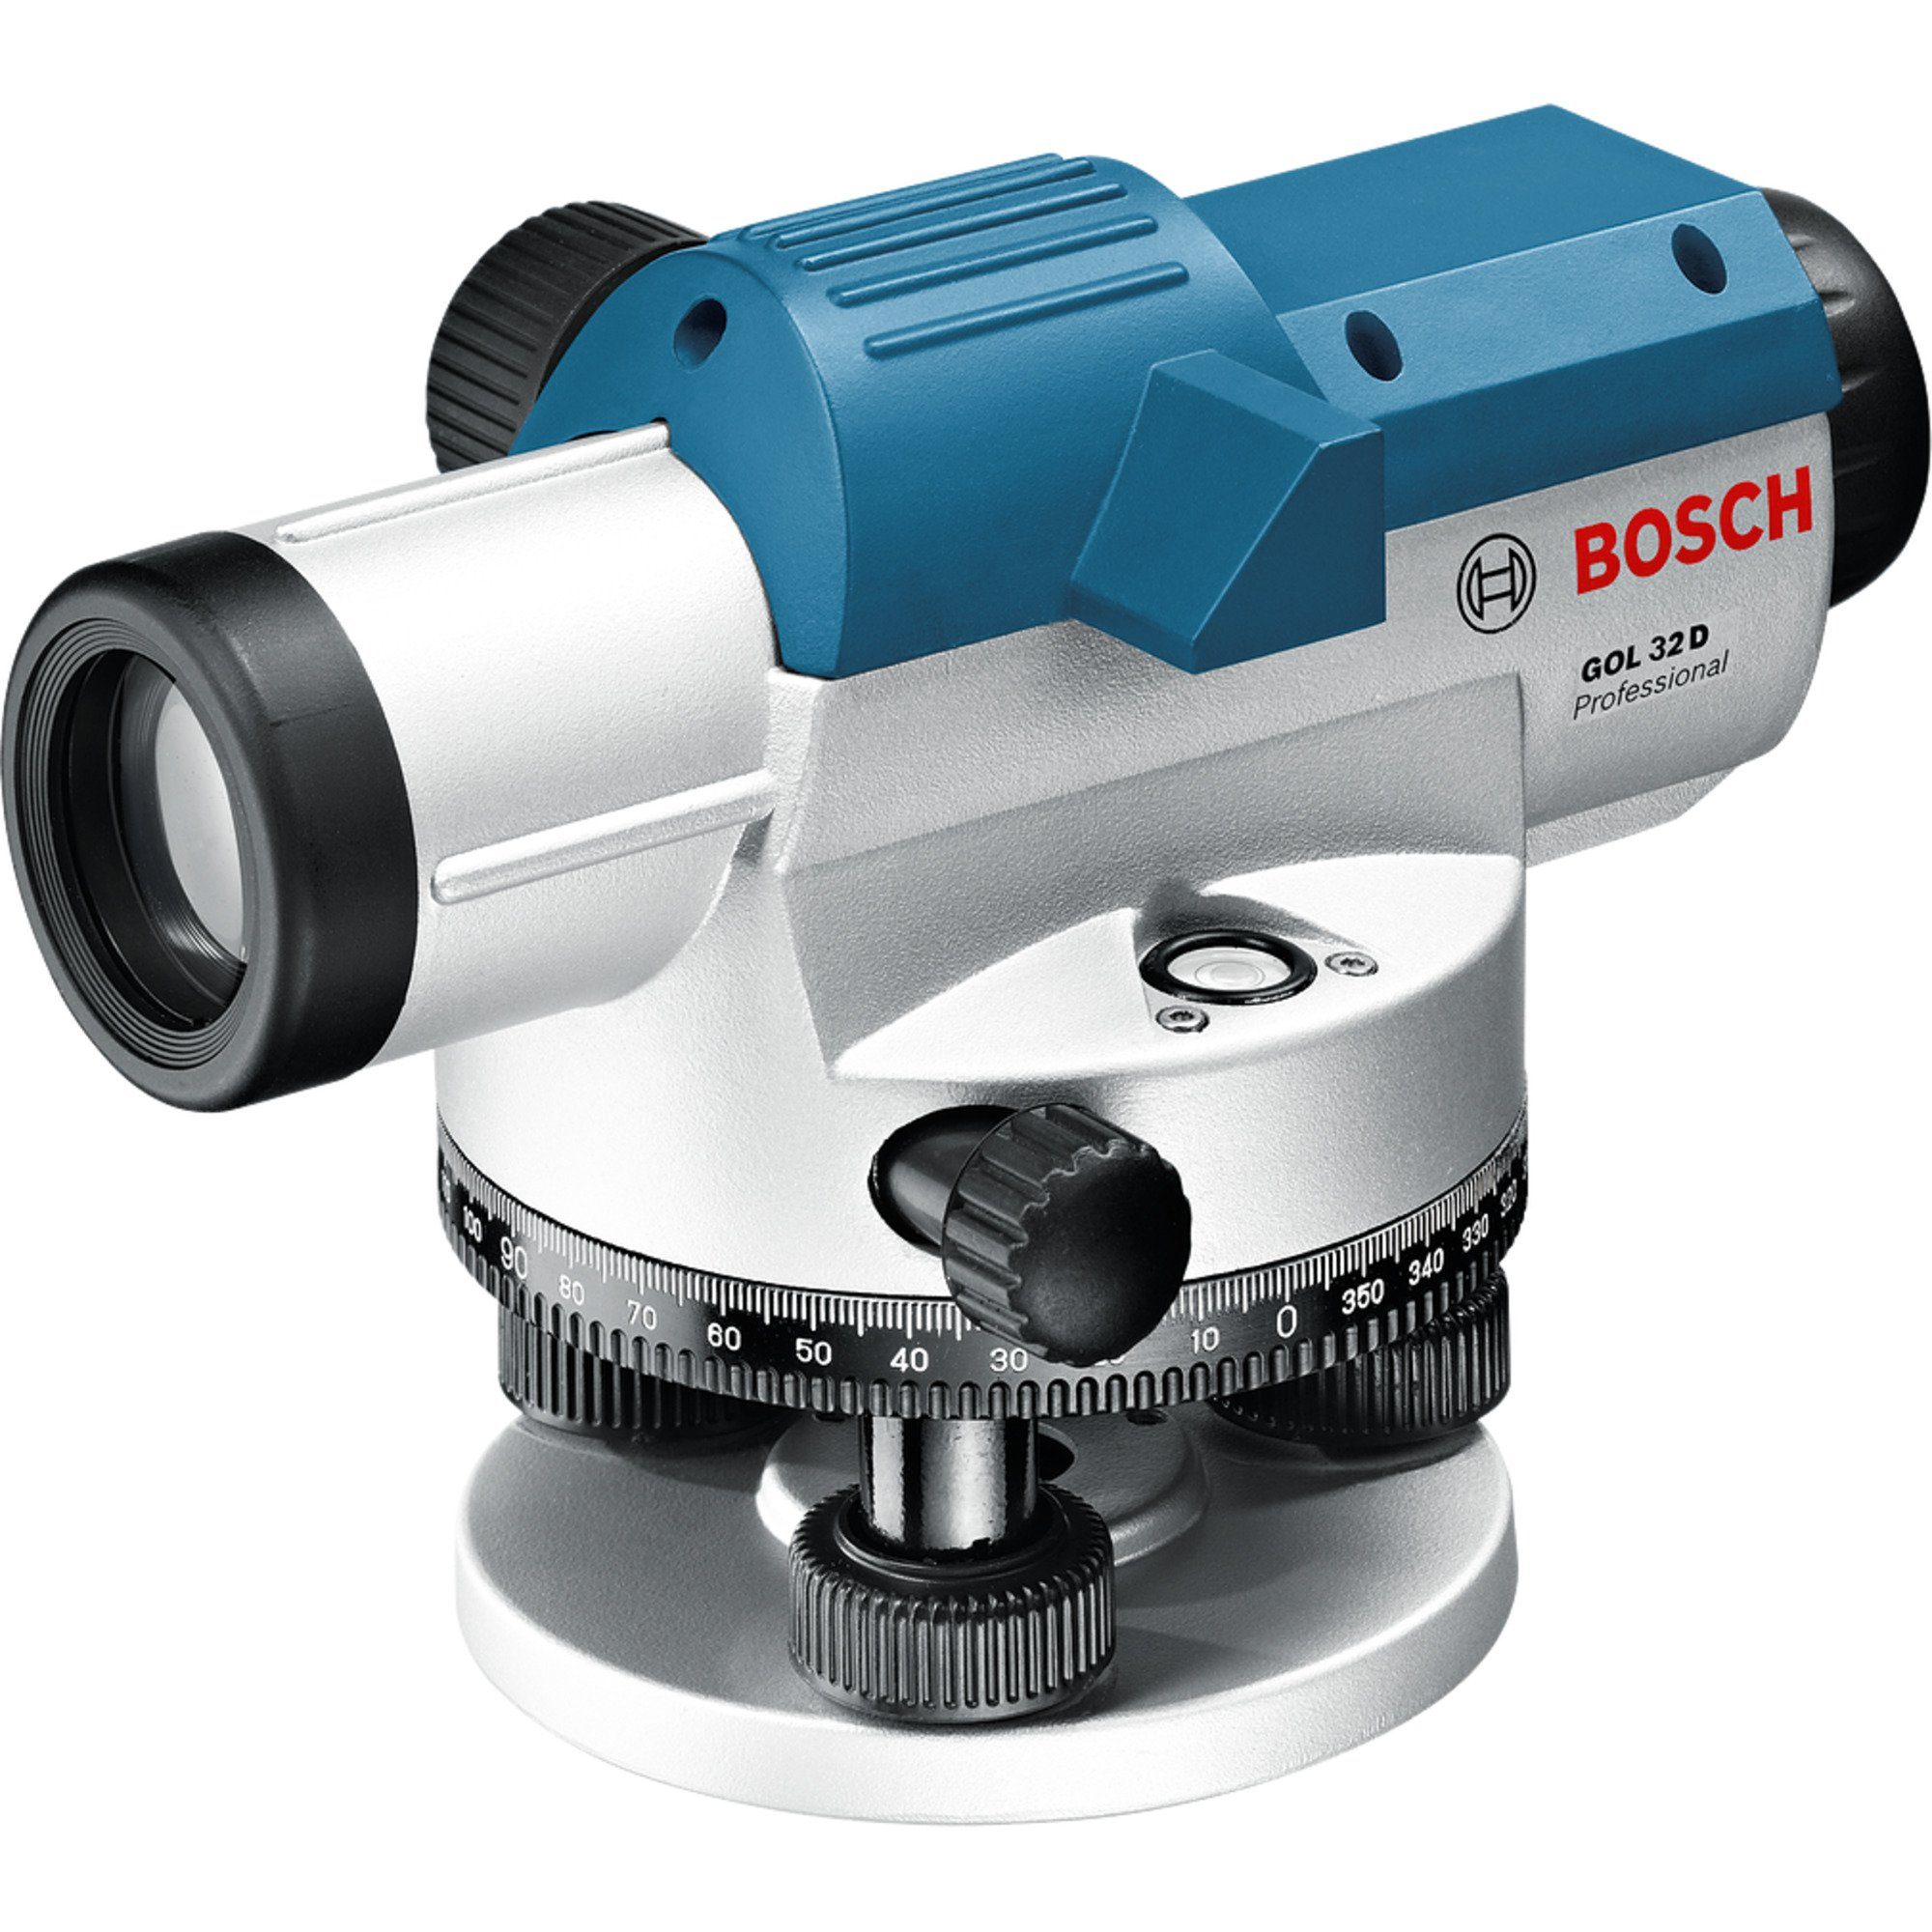 Akku-Multifunktionswerkzeug BOSCH GOL 32 Optisches Professional Bosch Nivelliergerät